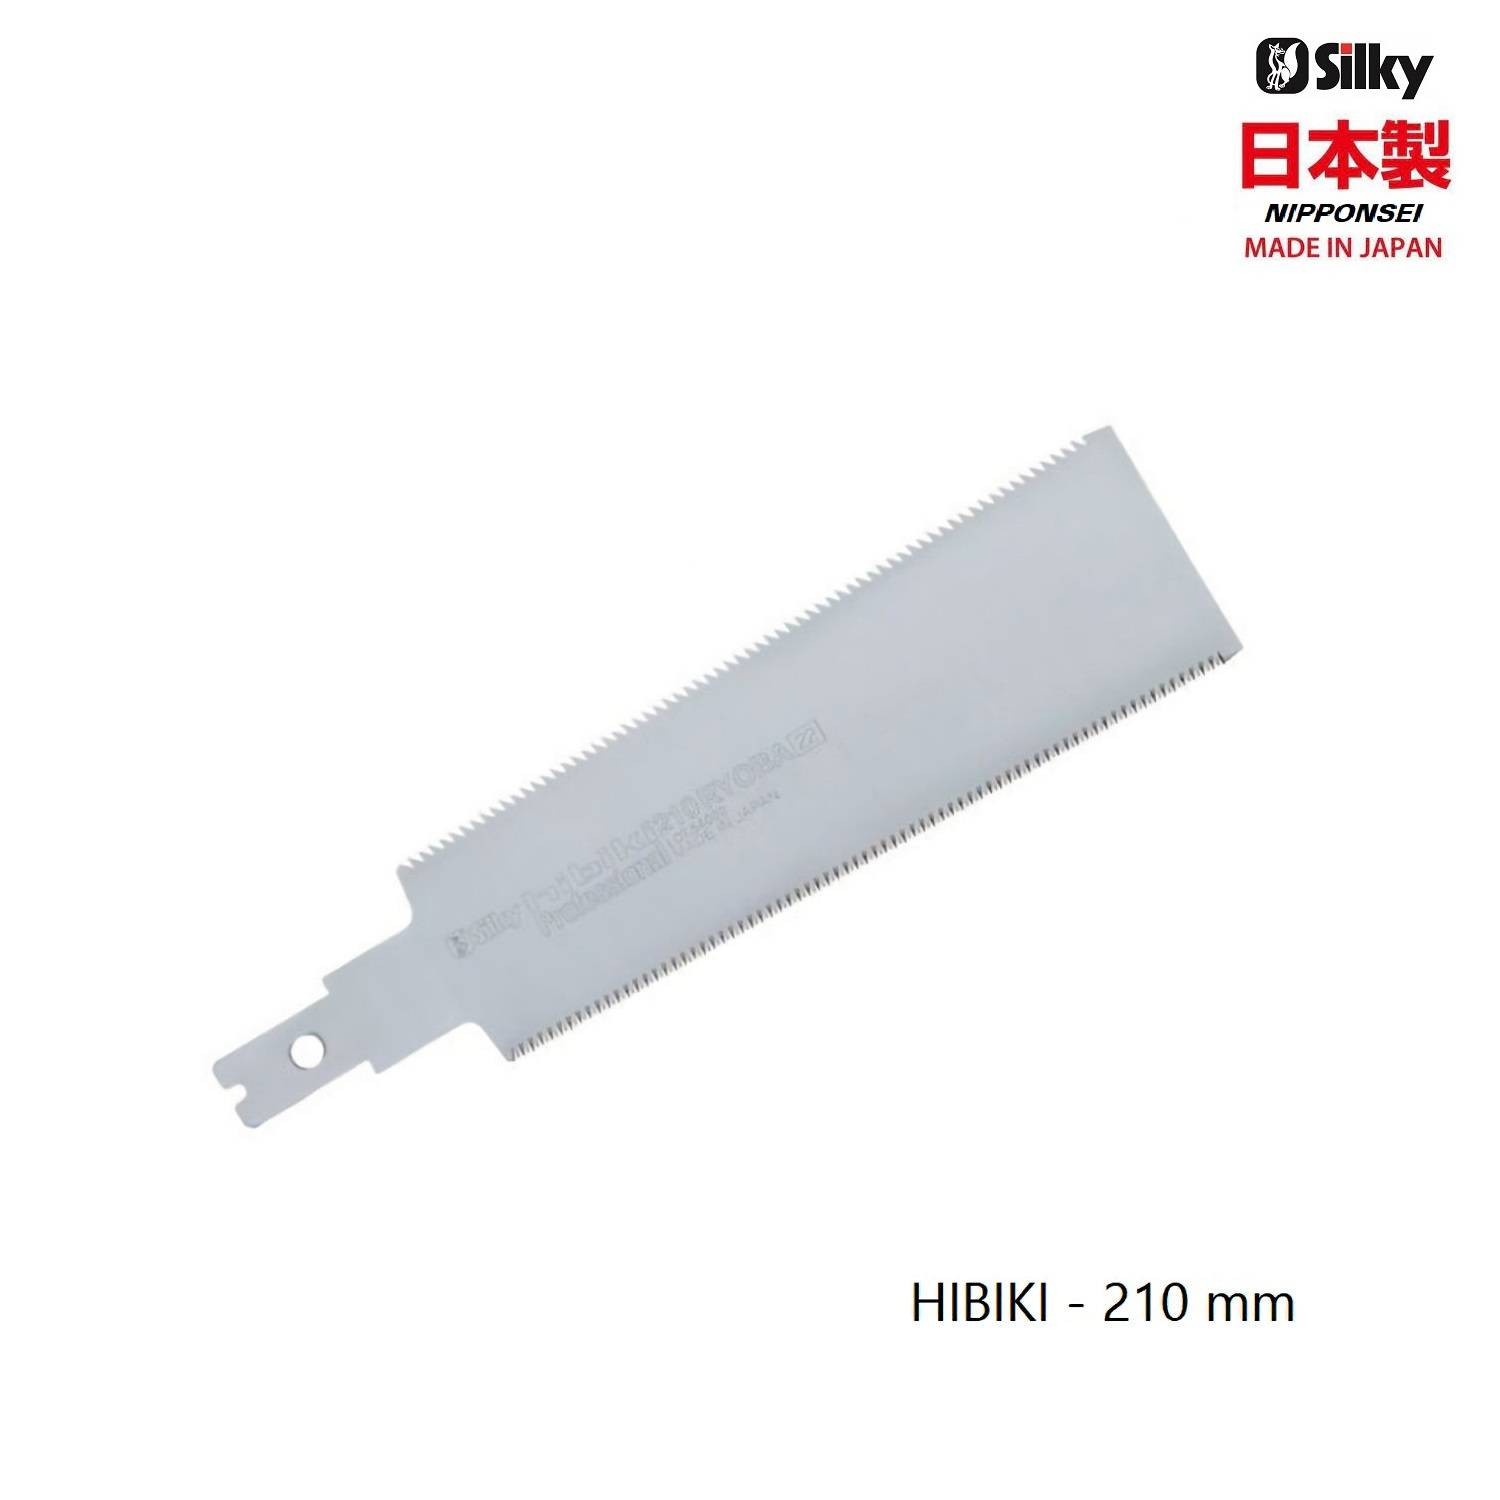 Silky-Hibiki-210mm-zaagblad